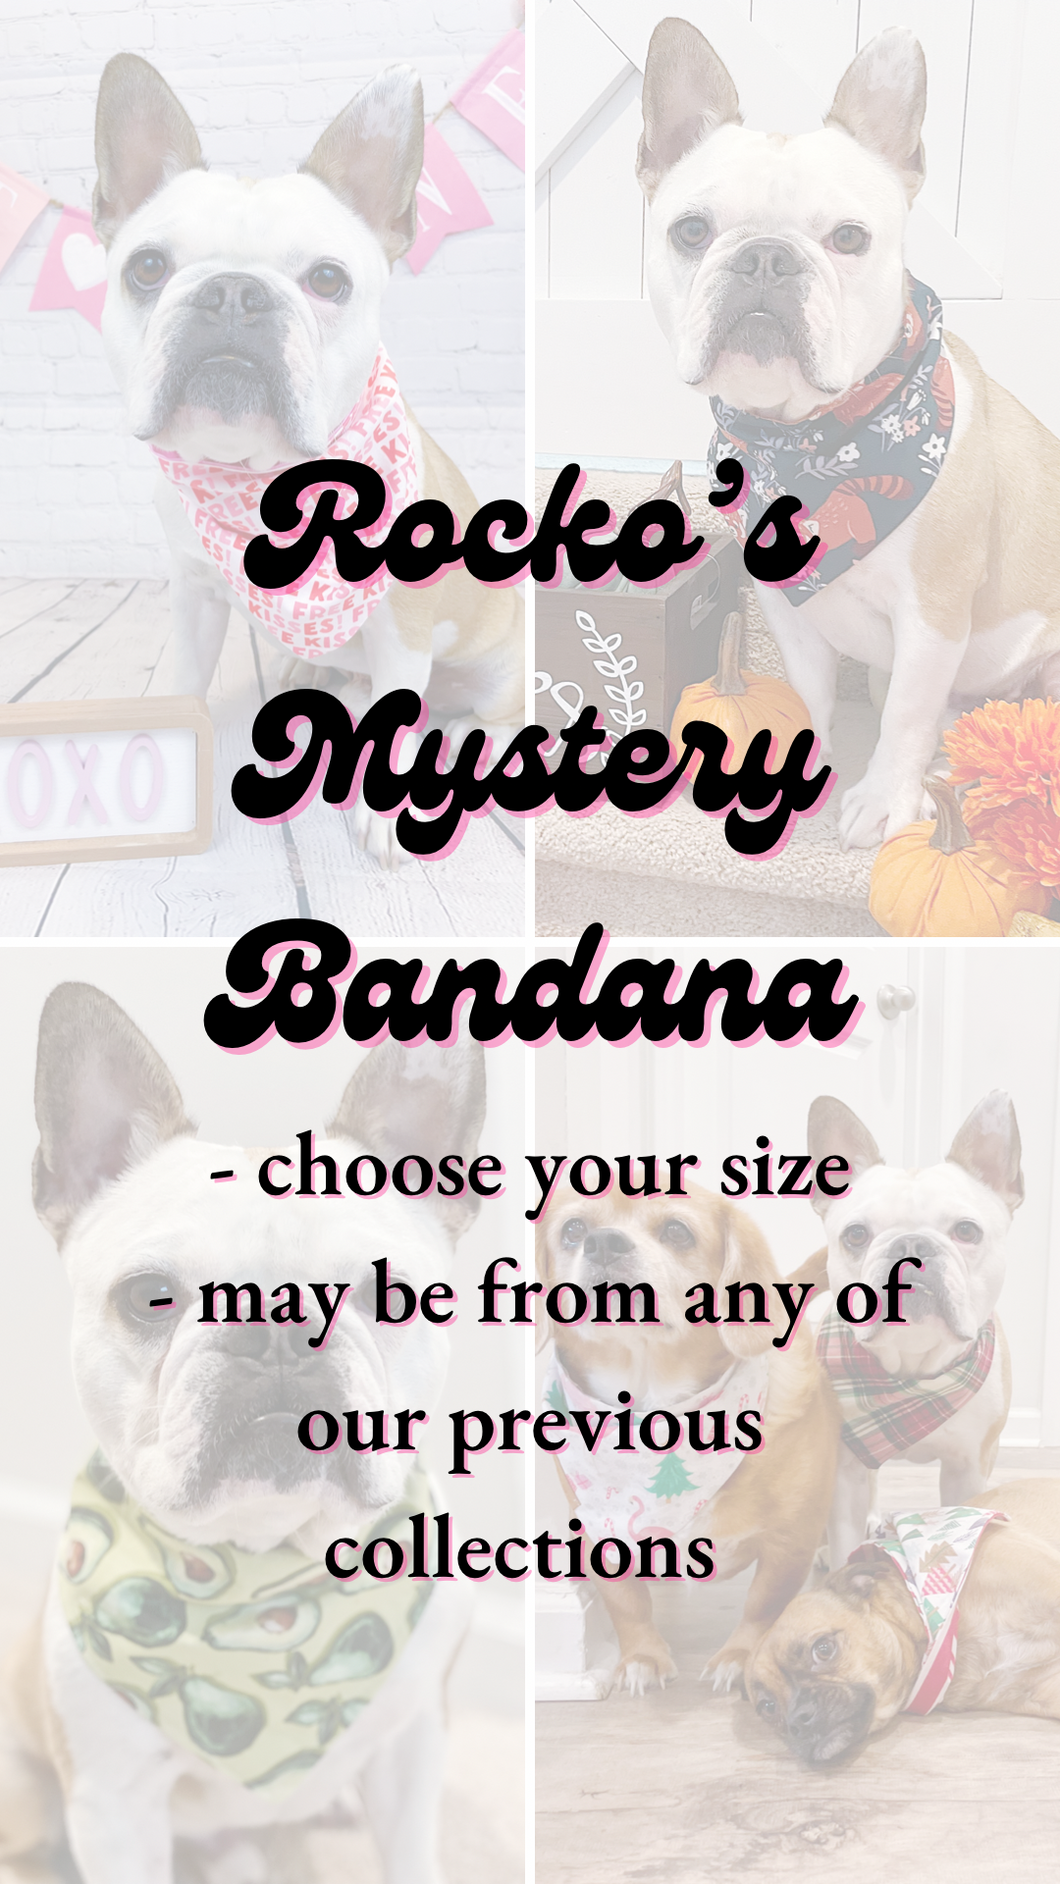 Rocko’s Mystery Bandana